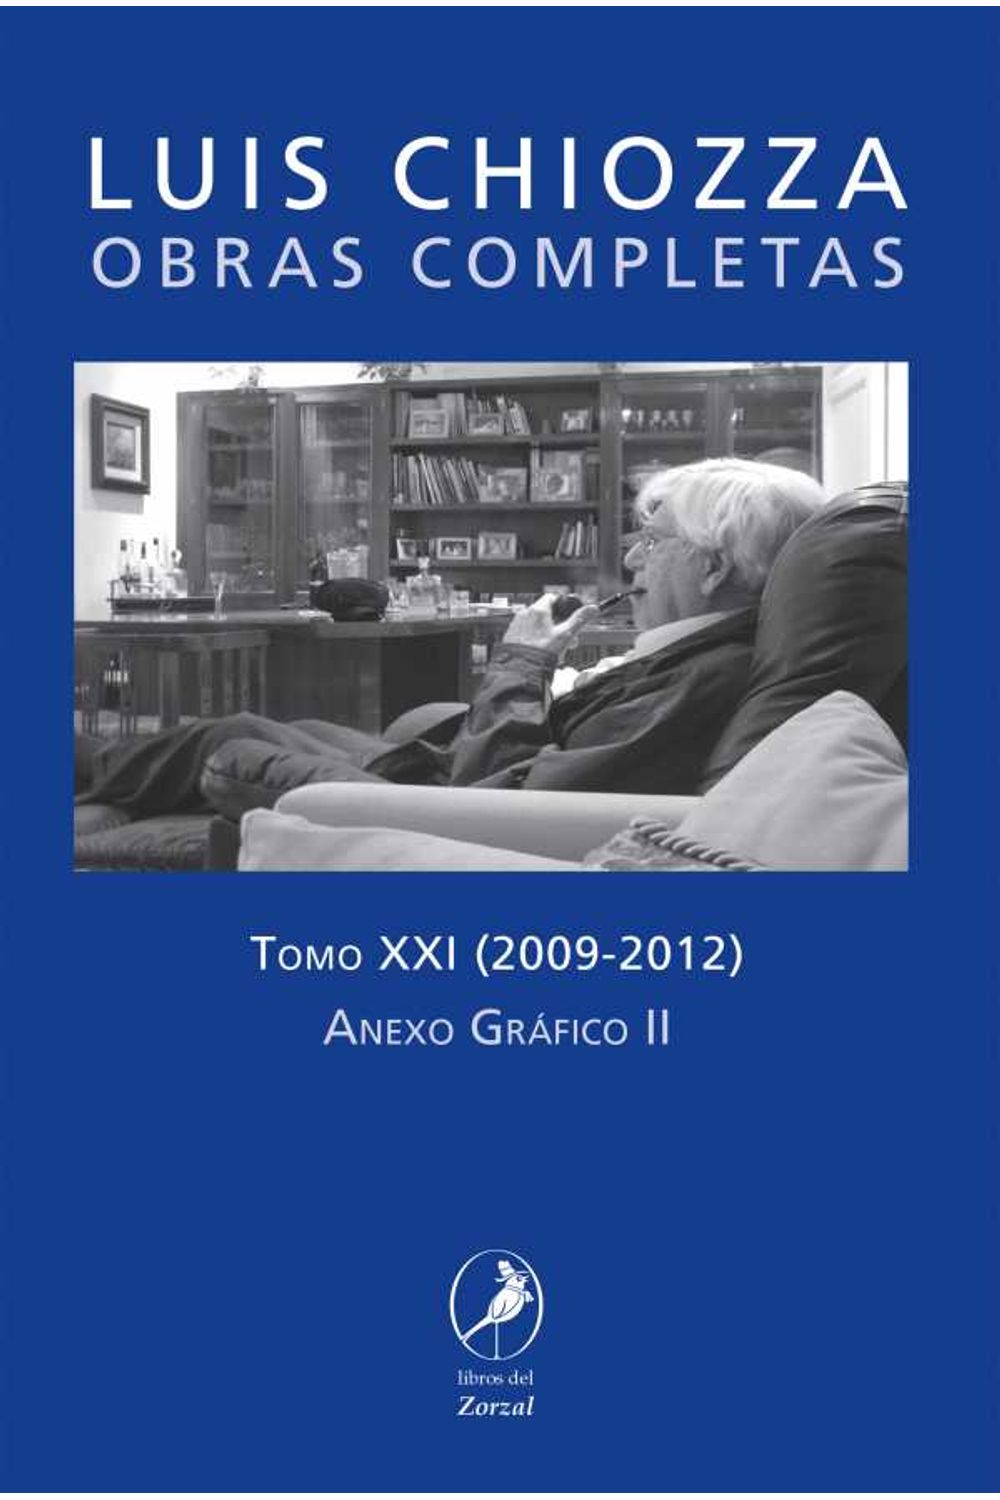 bw-obras-completas-de-luis-chiozza-tomo-xxi-libros-del-zorzal-9789875994102